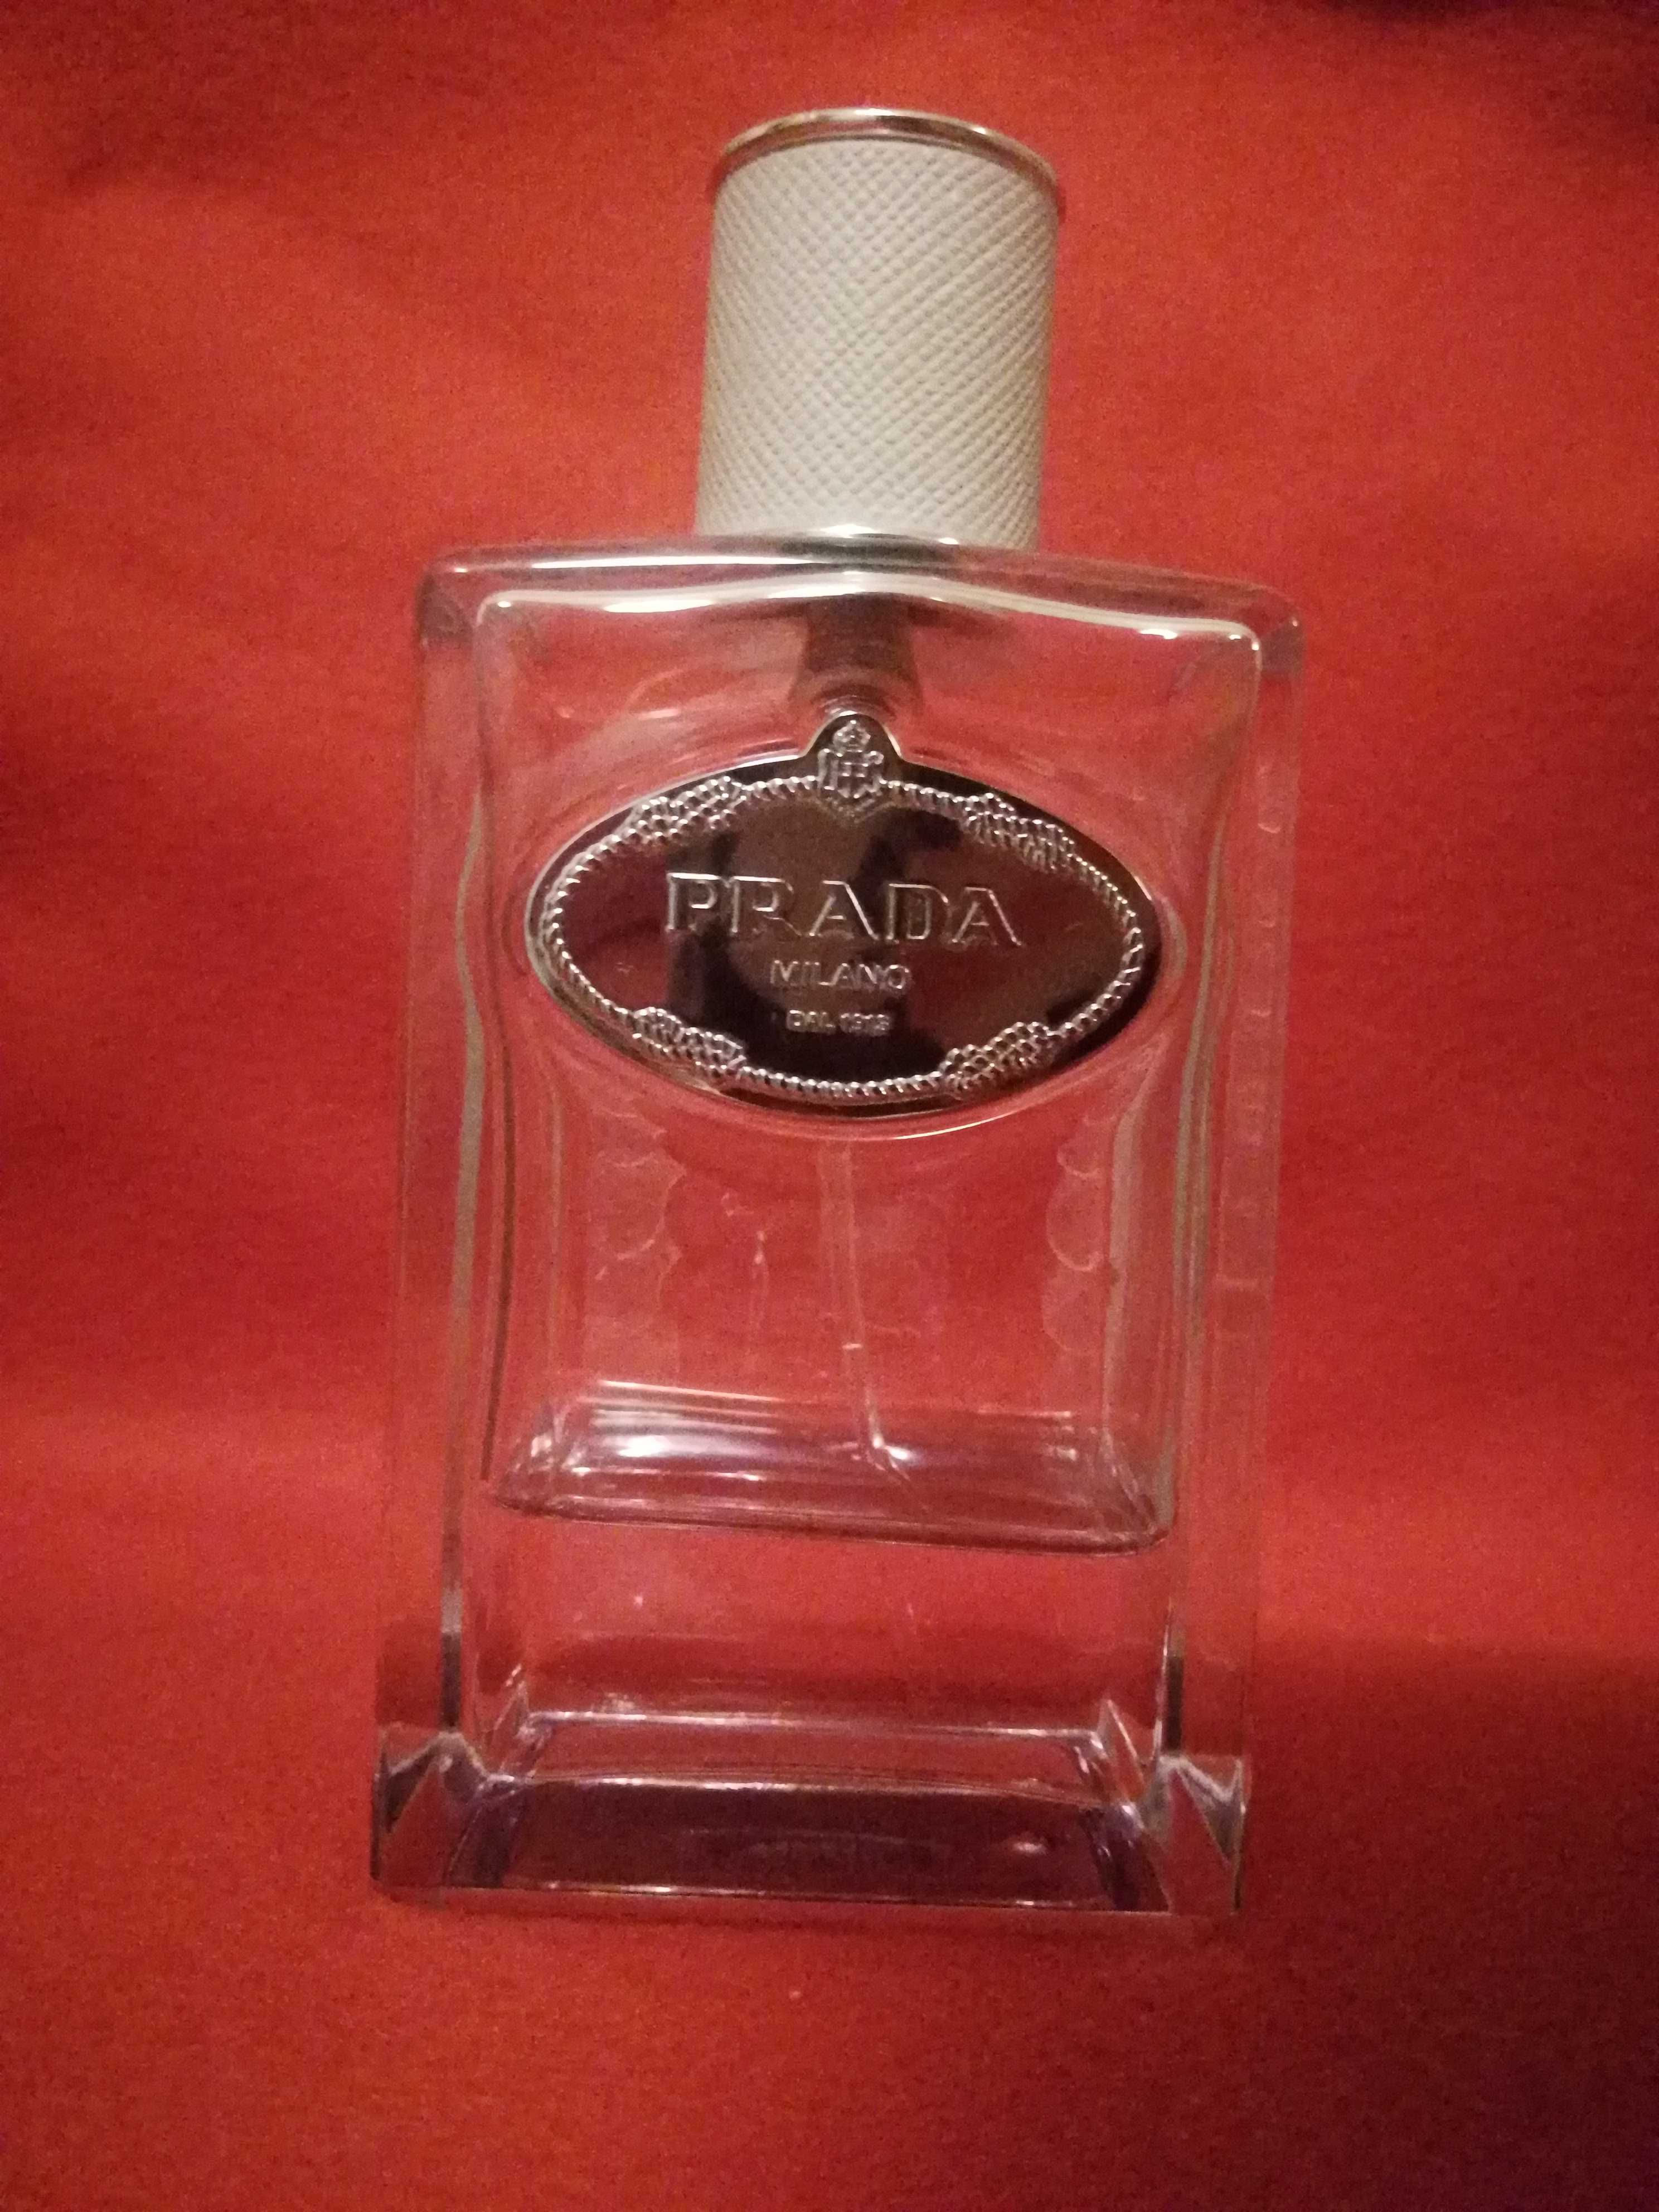 PRADA Milano perfumy 100 ml.